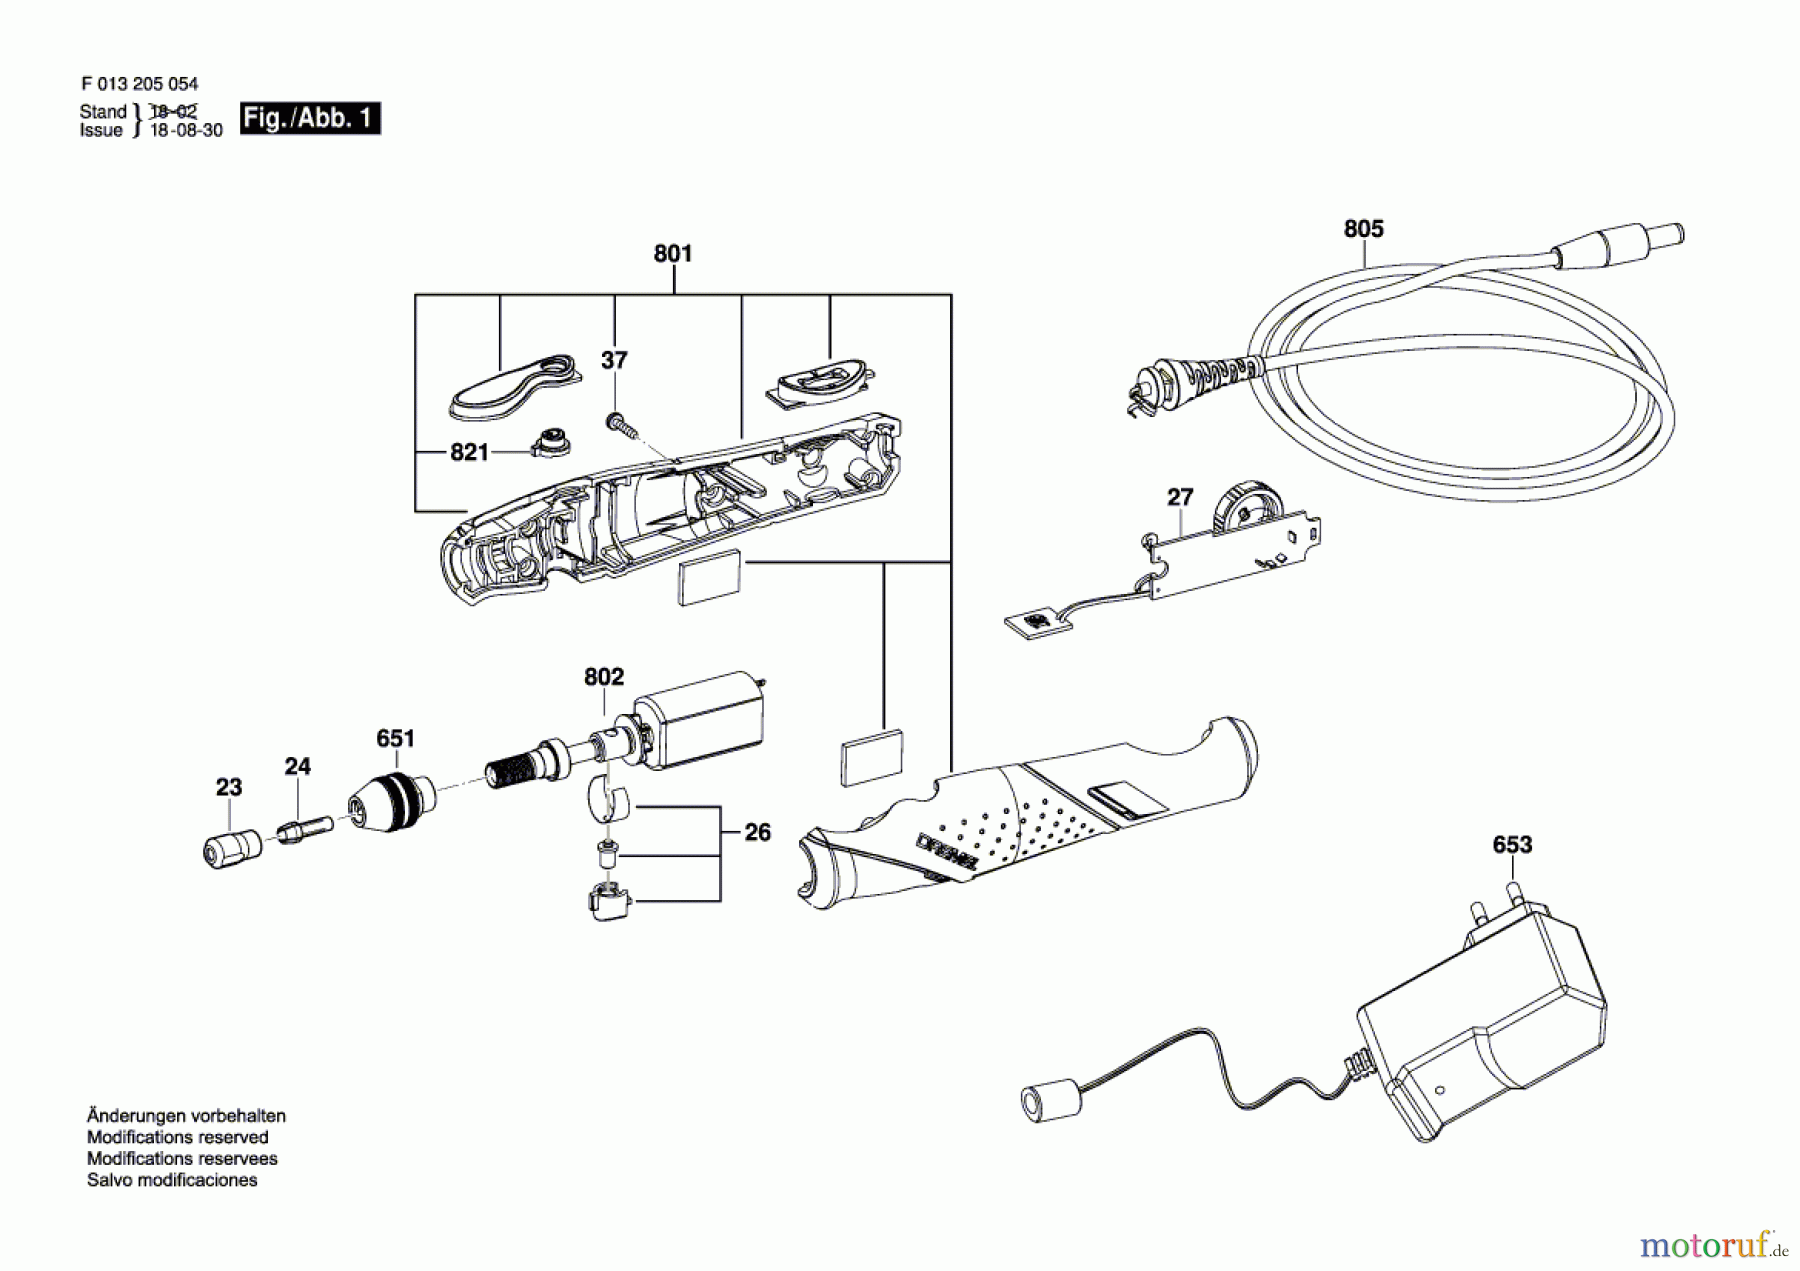  Bosch Werkzeug Drehwerkzeug 2050 Seite 1